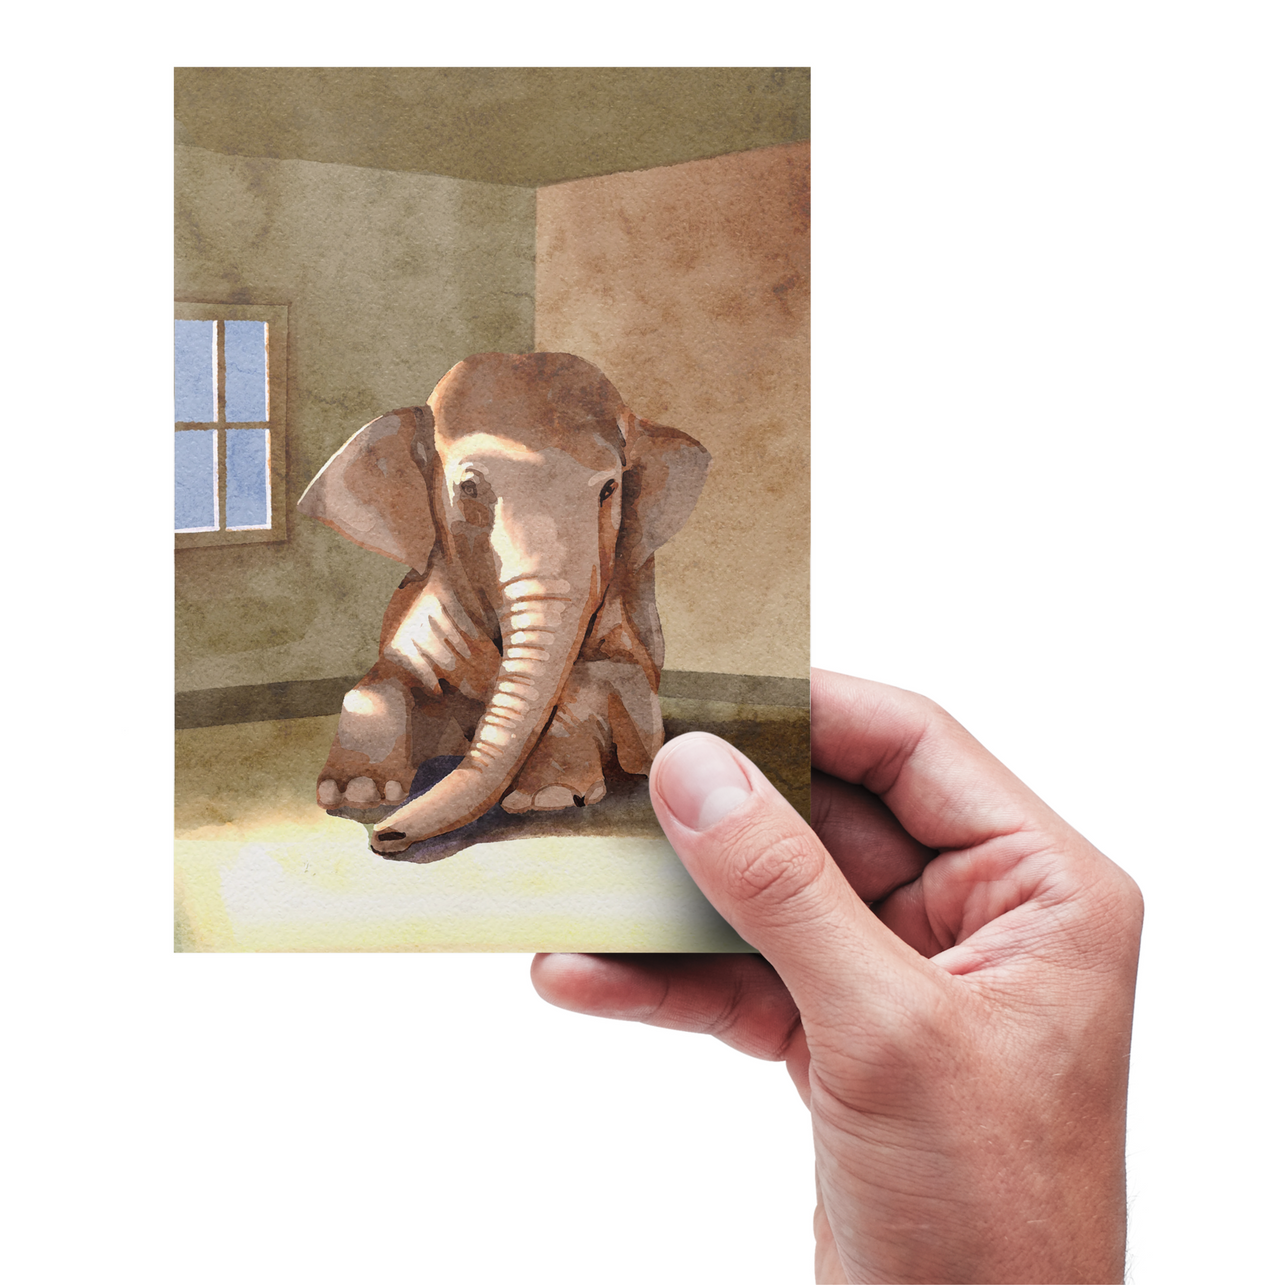 L'elefante nella stanza: la scheda di coaching